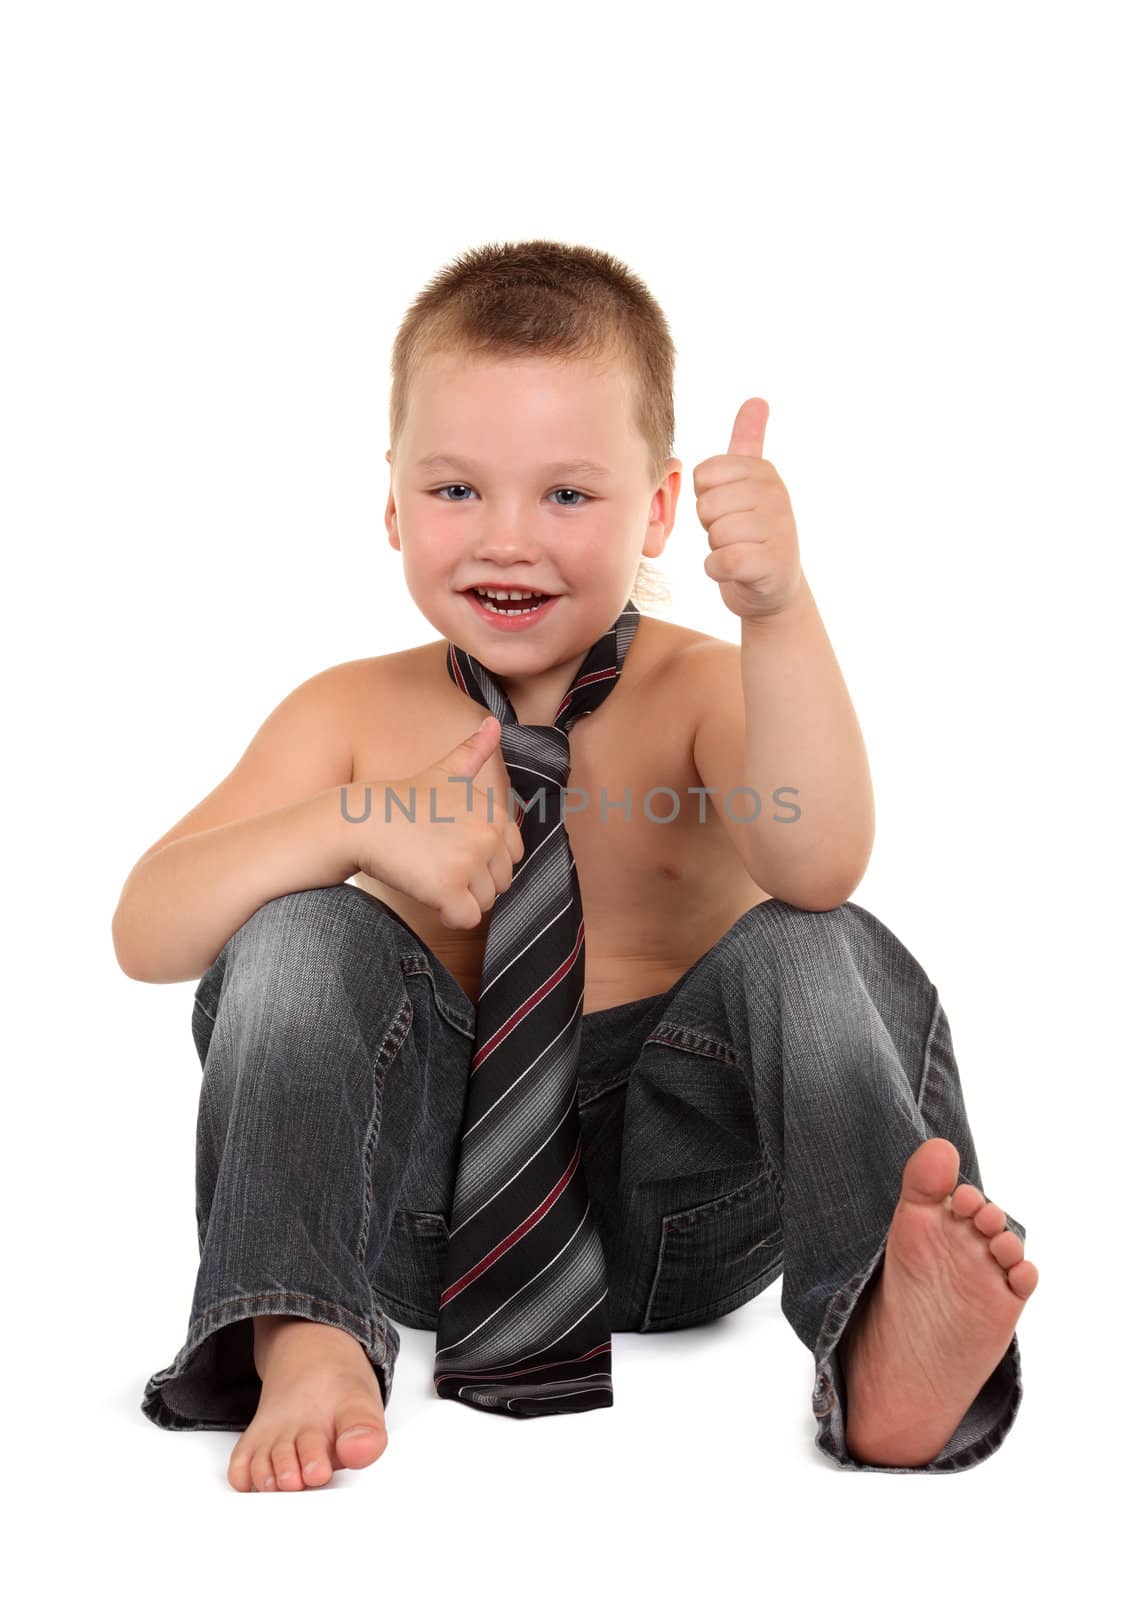 Little boy necktie on the white background
